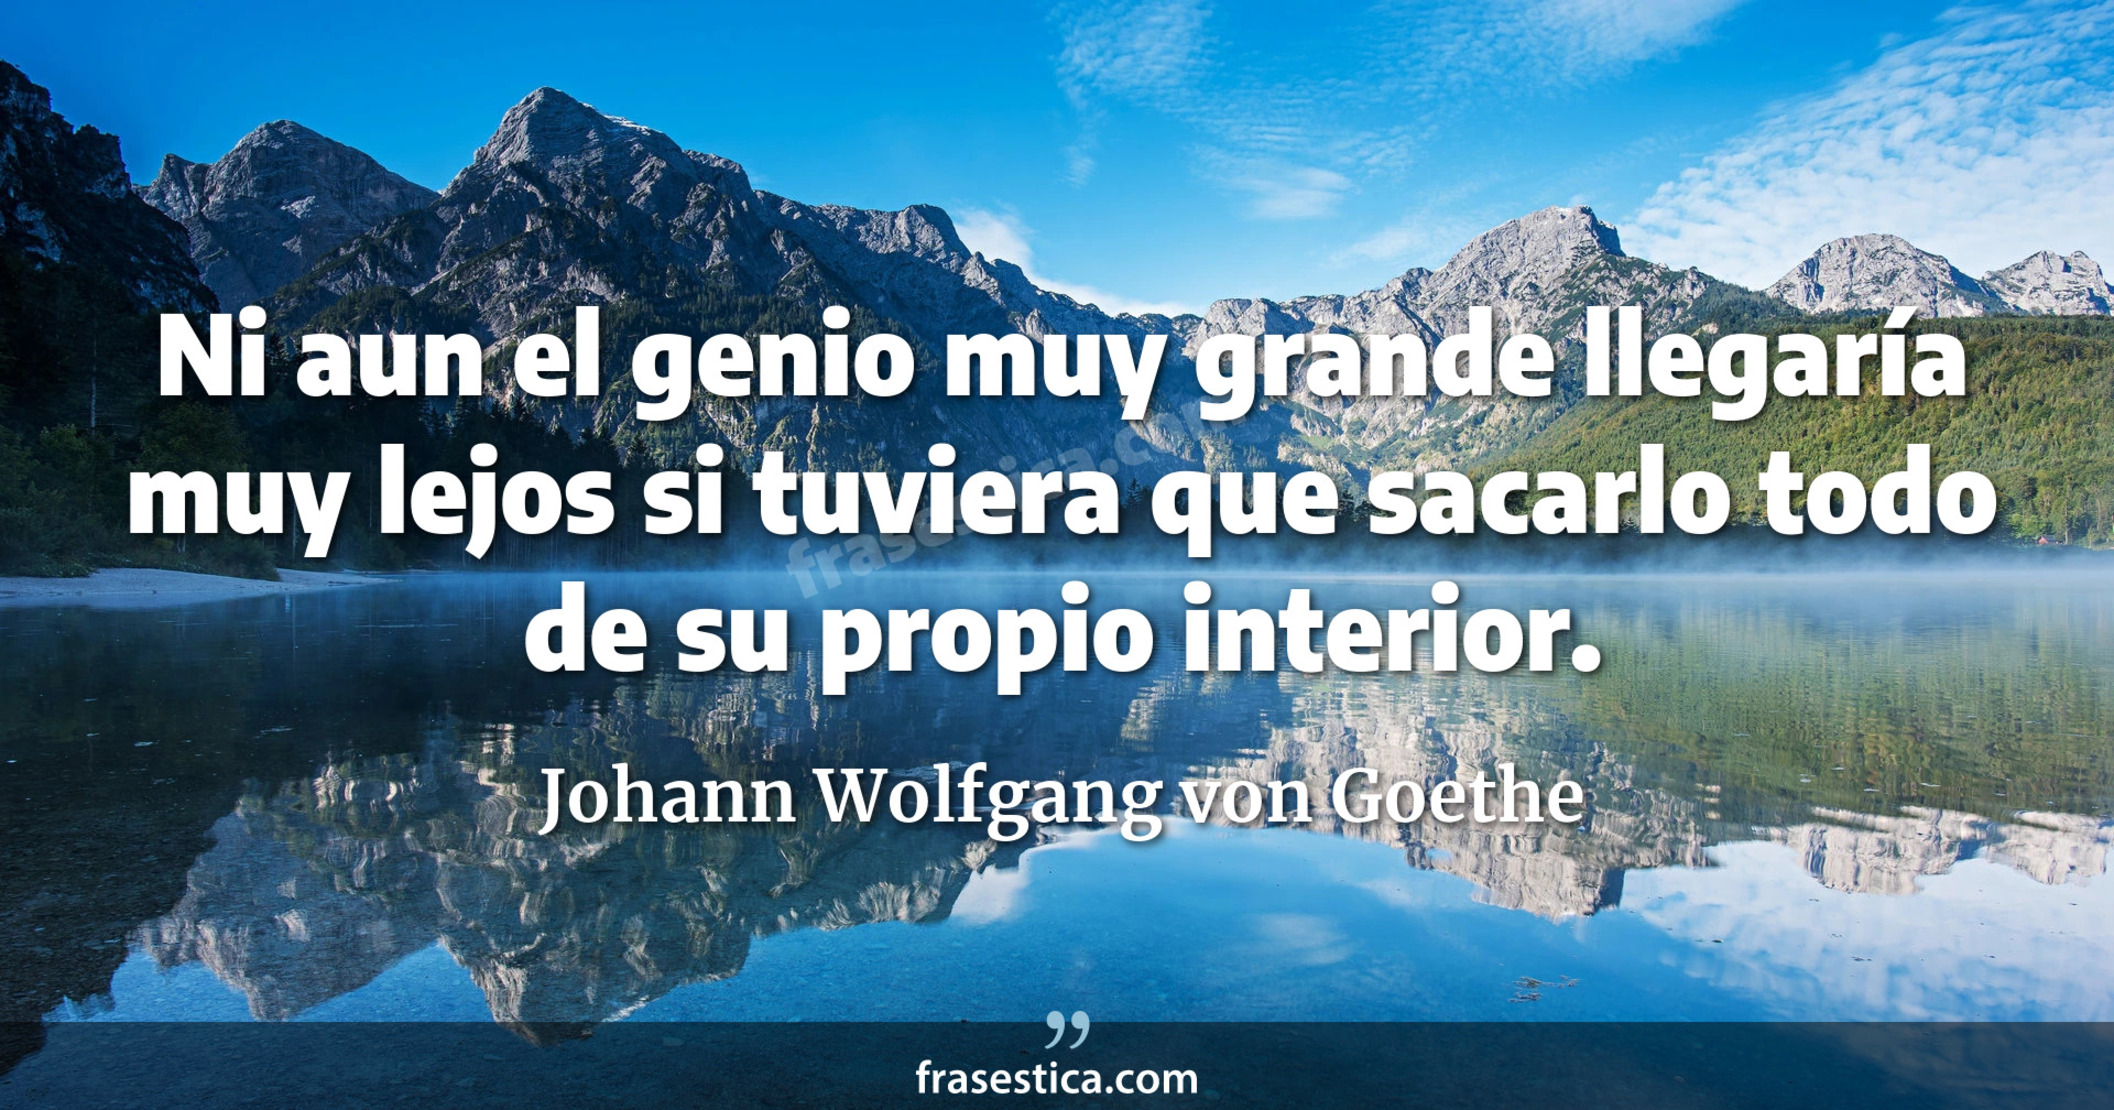 Ni aun el genio muy grande llegaría muy lejos si tuviera que sacarlo todo de su propio interior. - Johann Wolfgang von Goethe